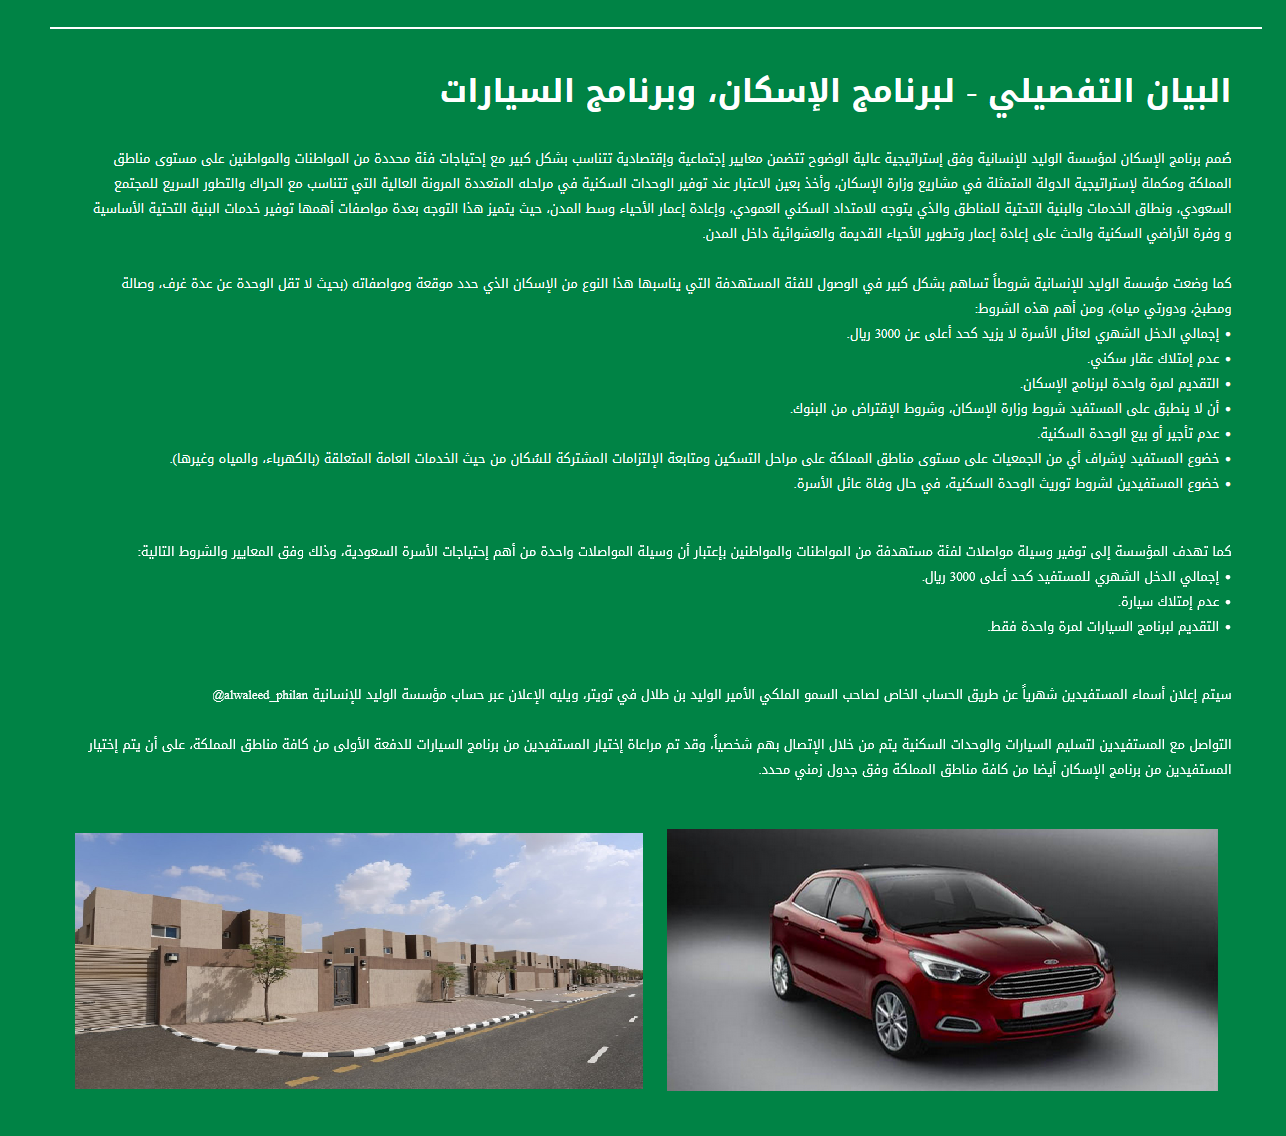 شروط تسجيل مشروعات مساعدة الوليد بن طلال للإسكان وتملك سيارة